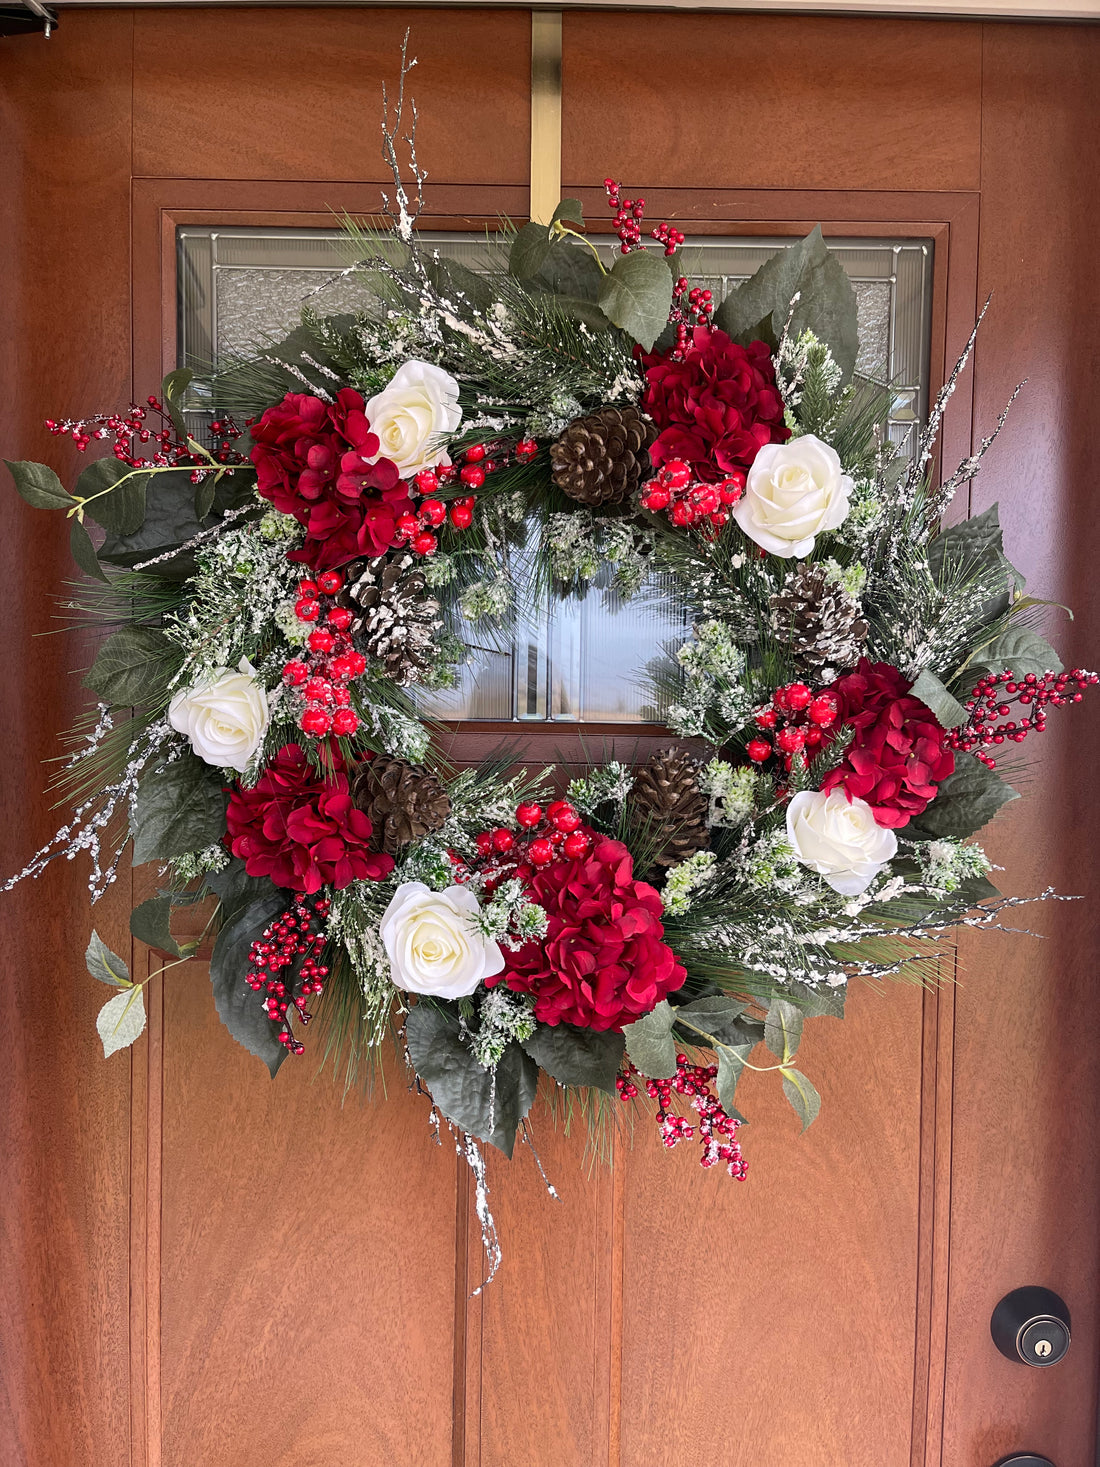 The Joyful Wreath, Christmas Wreath, Full Christmas Wreath for Front Door, Holiday Neutral Wreath